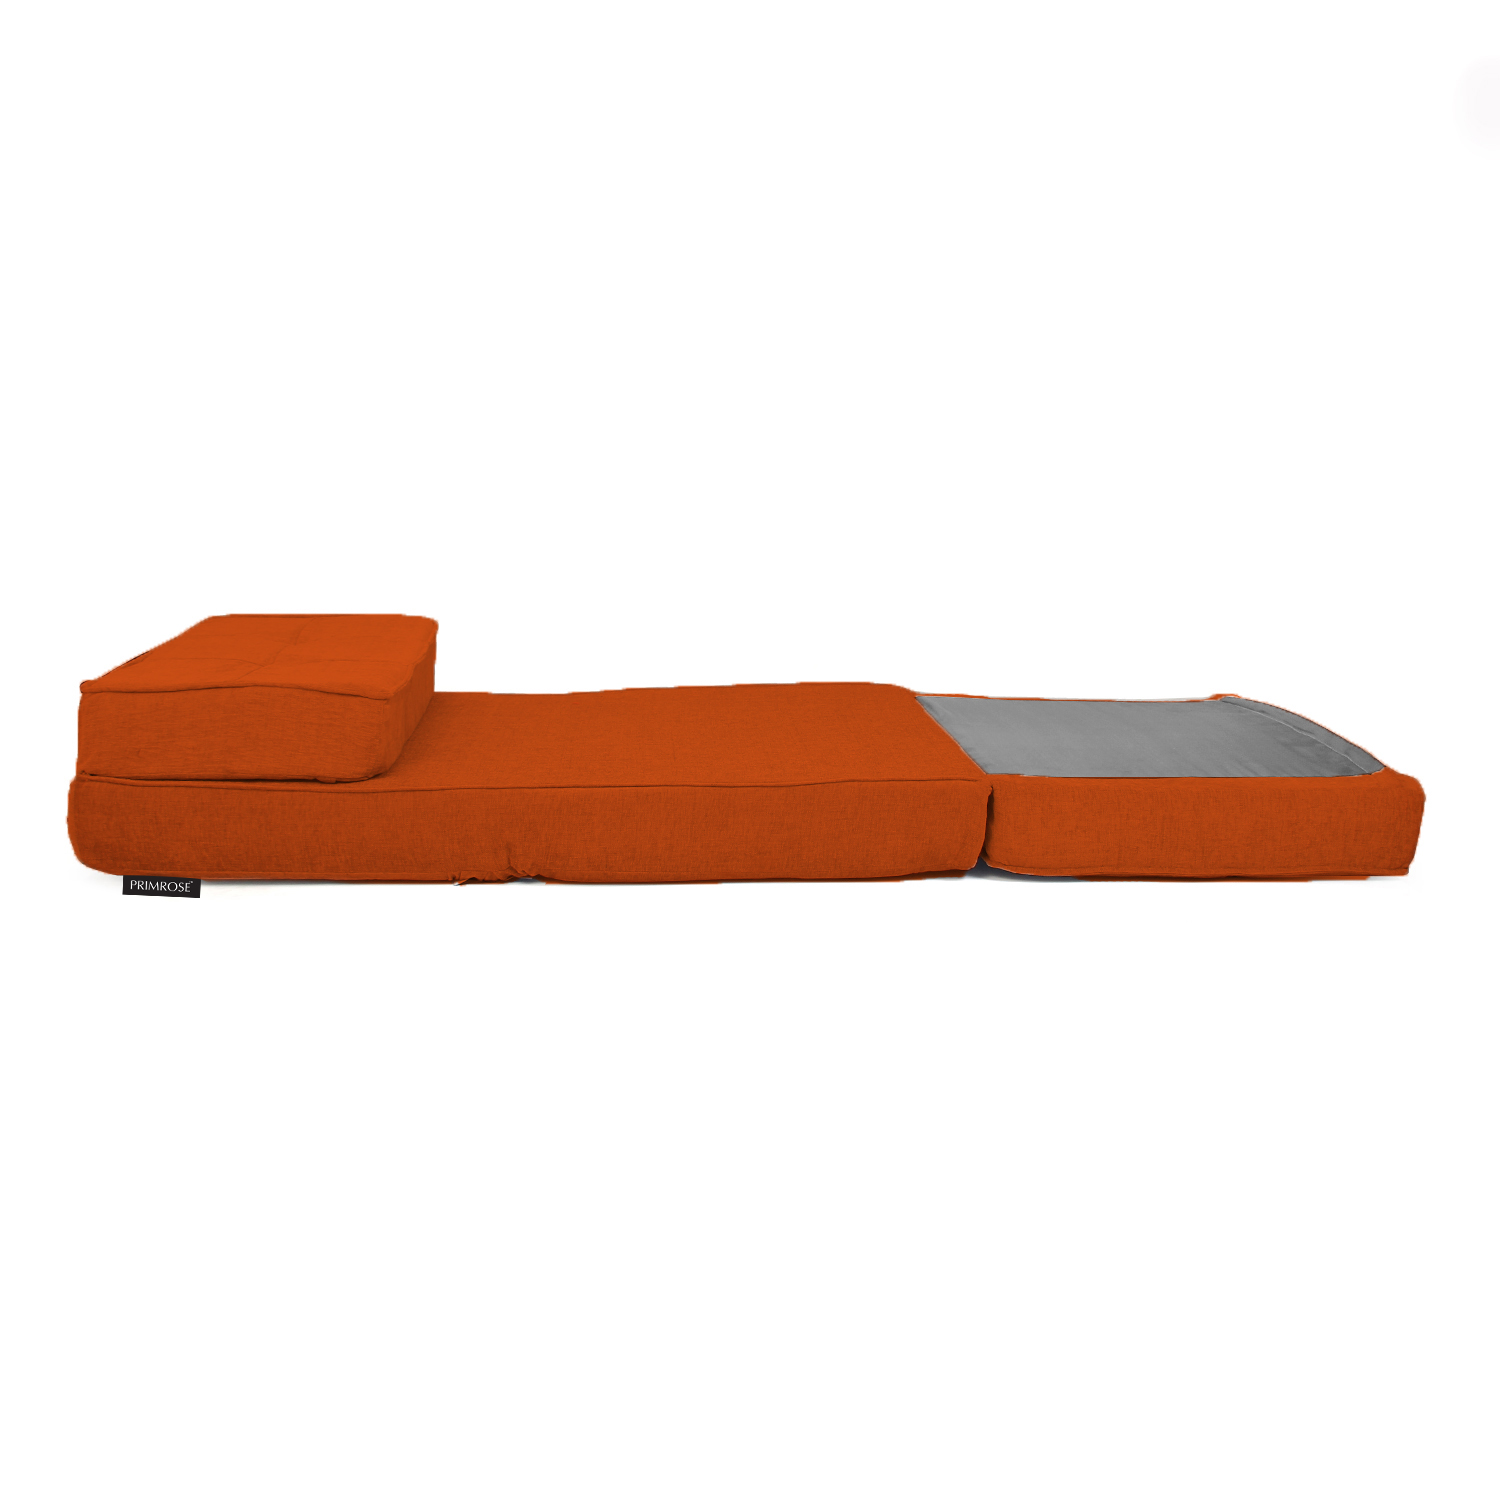 PRIMROSE Tulip Futon Molfino Fabric Single Seater Sofa Cum Bed ORANGE